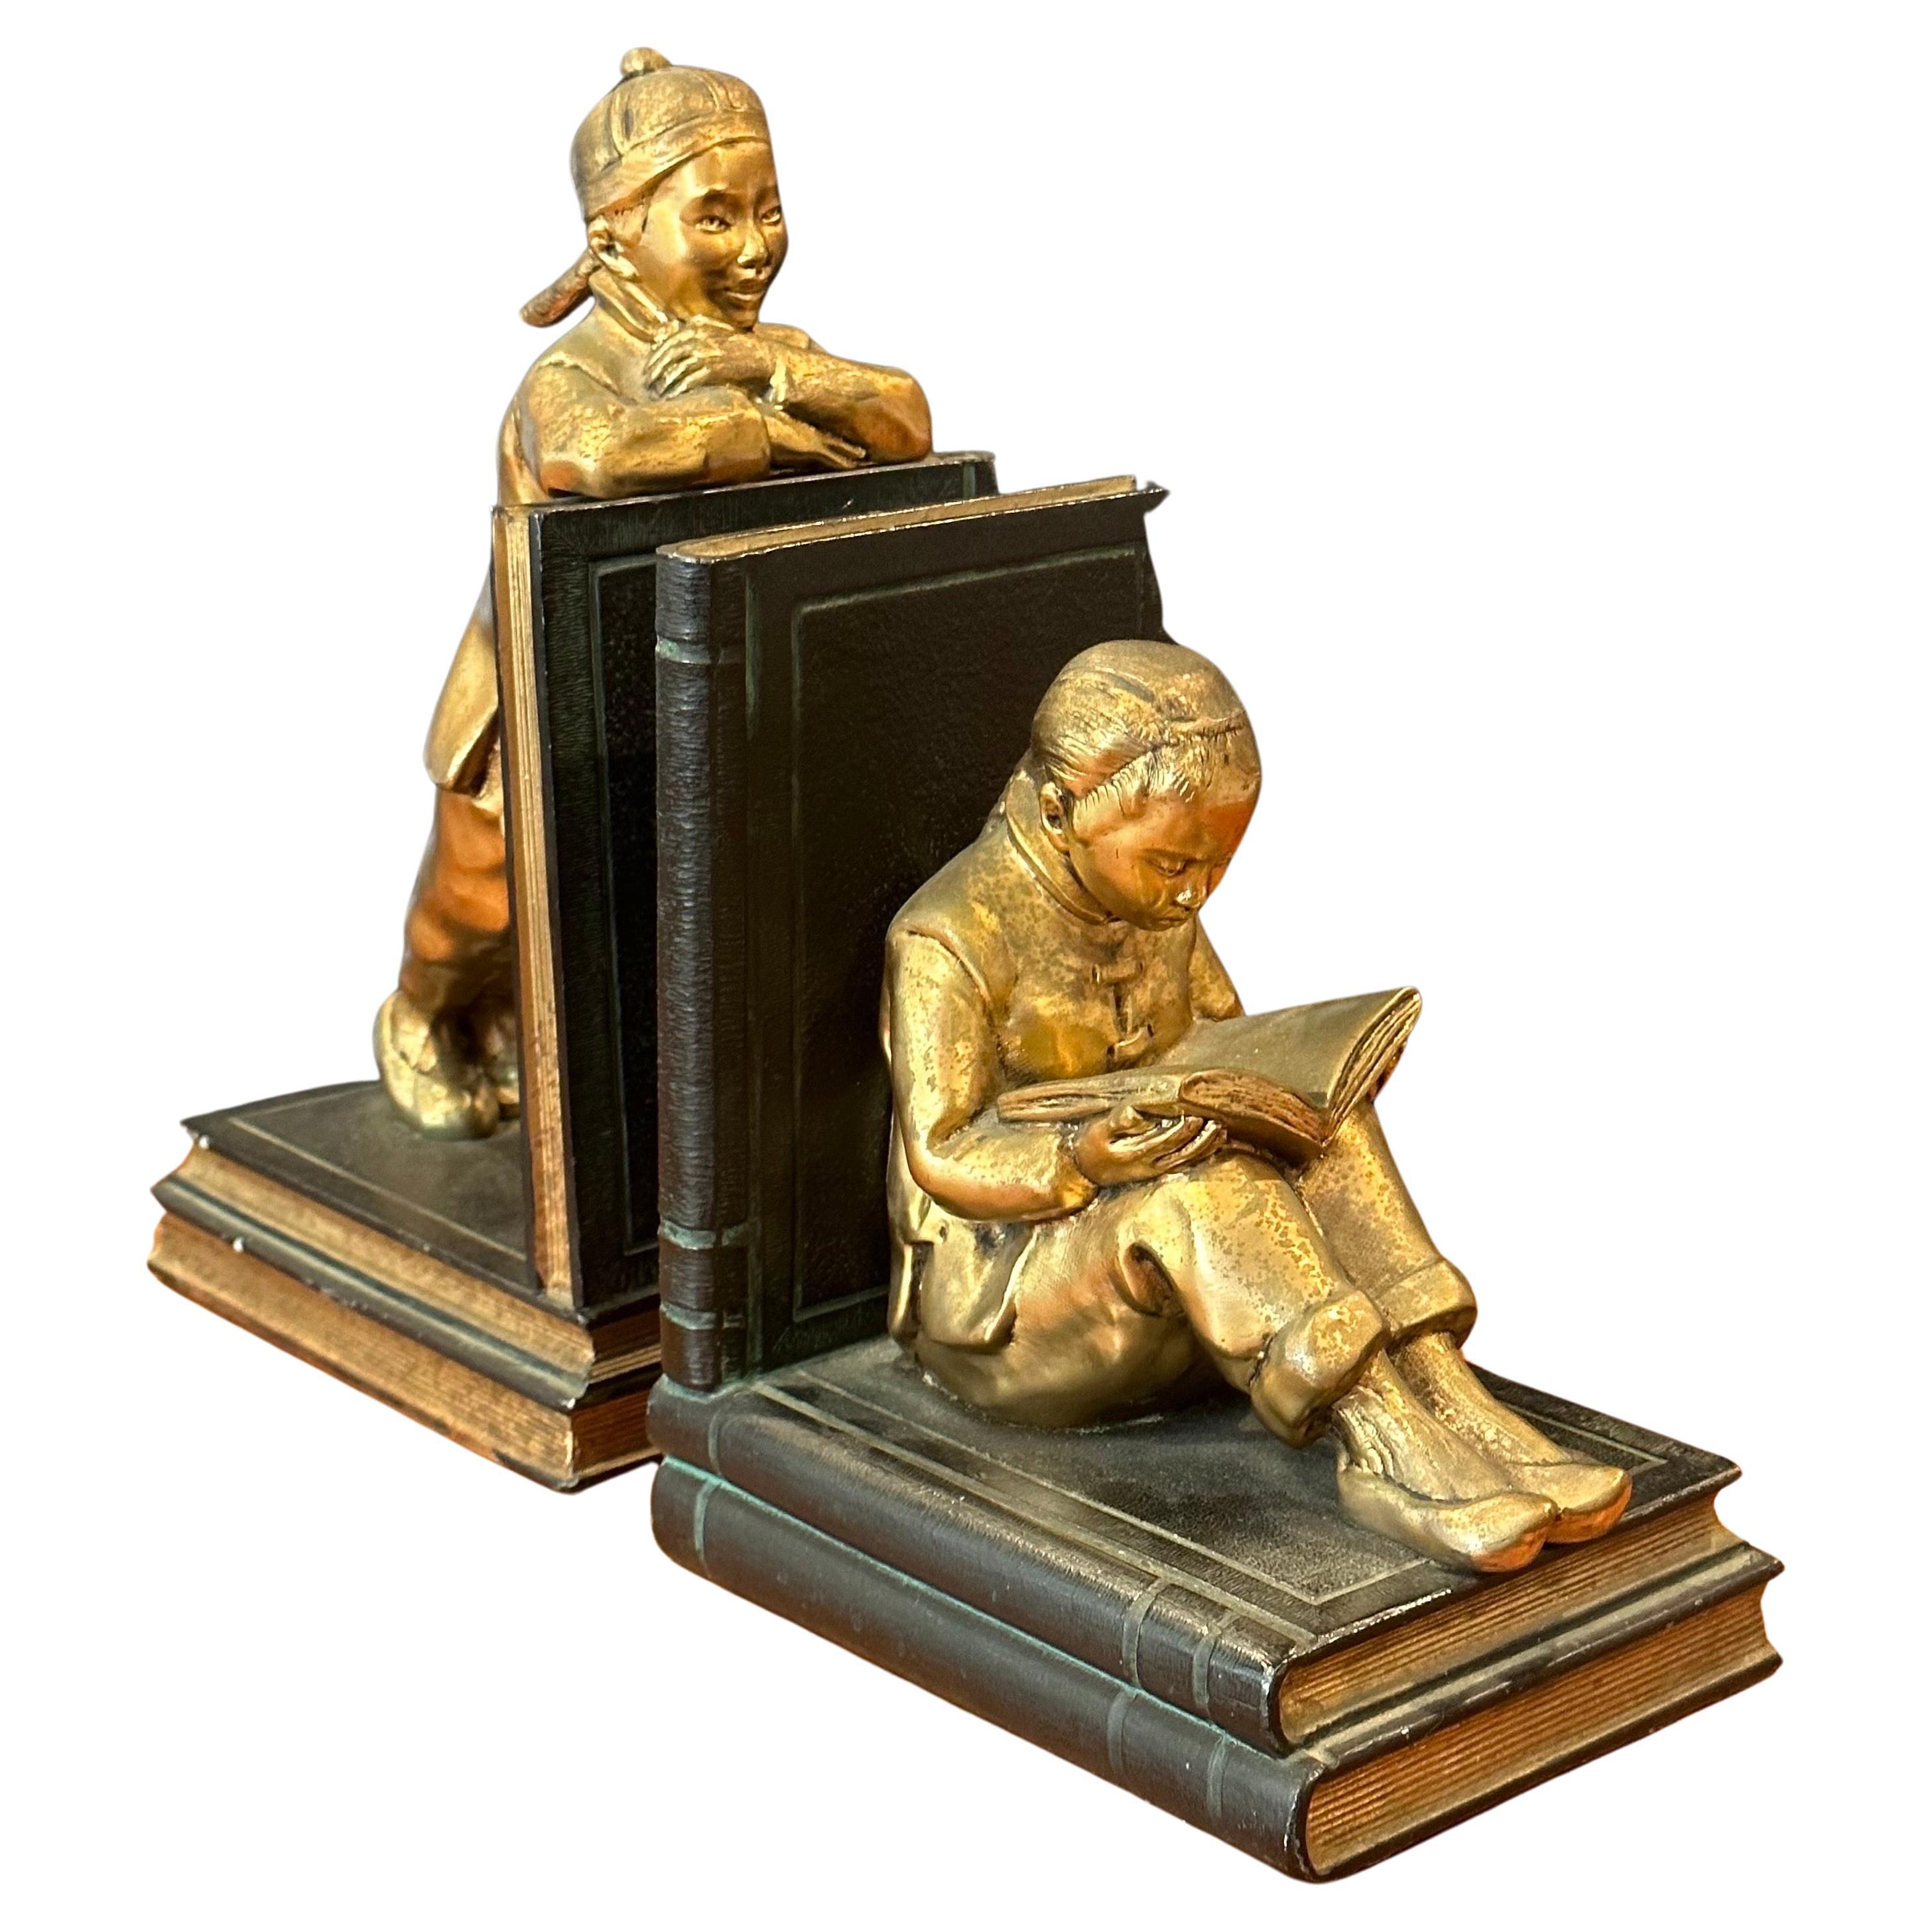 Ein fabelhaftes Vintage-Paar vergoldeter, metallverkleideter chinesischer Kindergelehrter-Buchstützen von Ronson Art Metal Works, ca. 1930er Jahre. Die Buchstützen stellen zwei chinesische Jugendliche dar, die wunderschön modelliert sind; der Junge